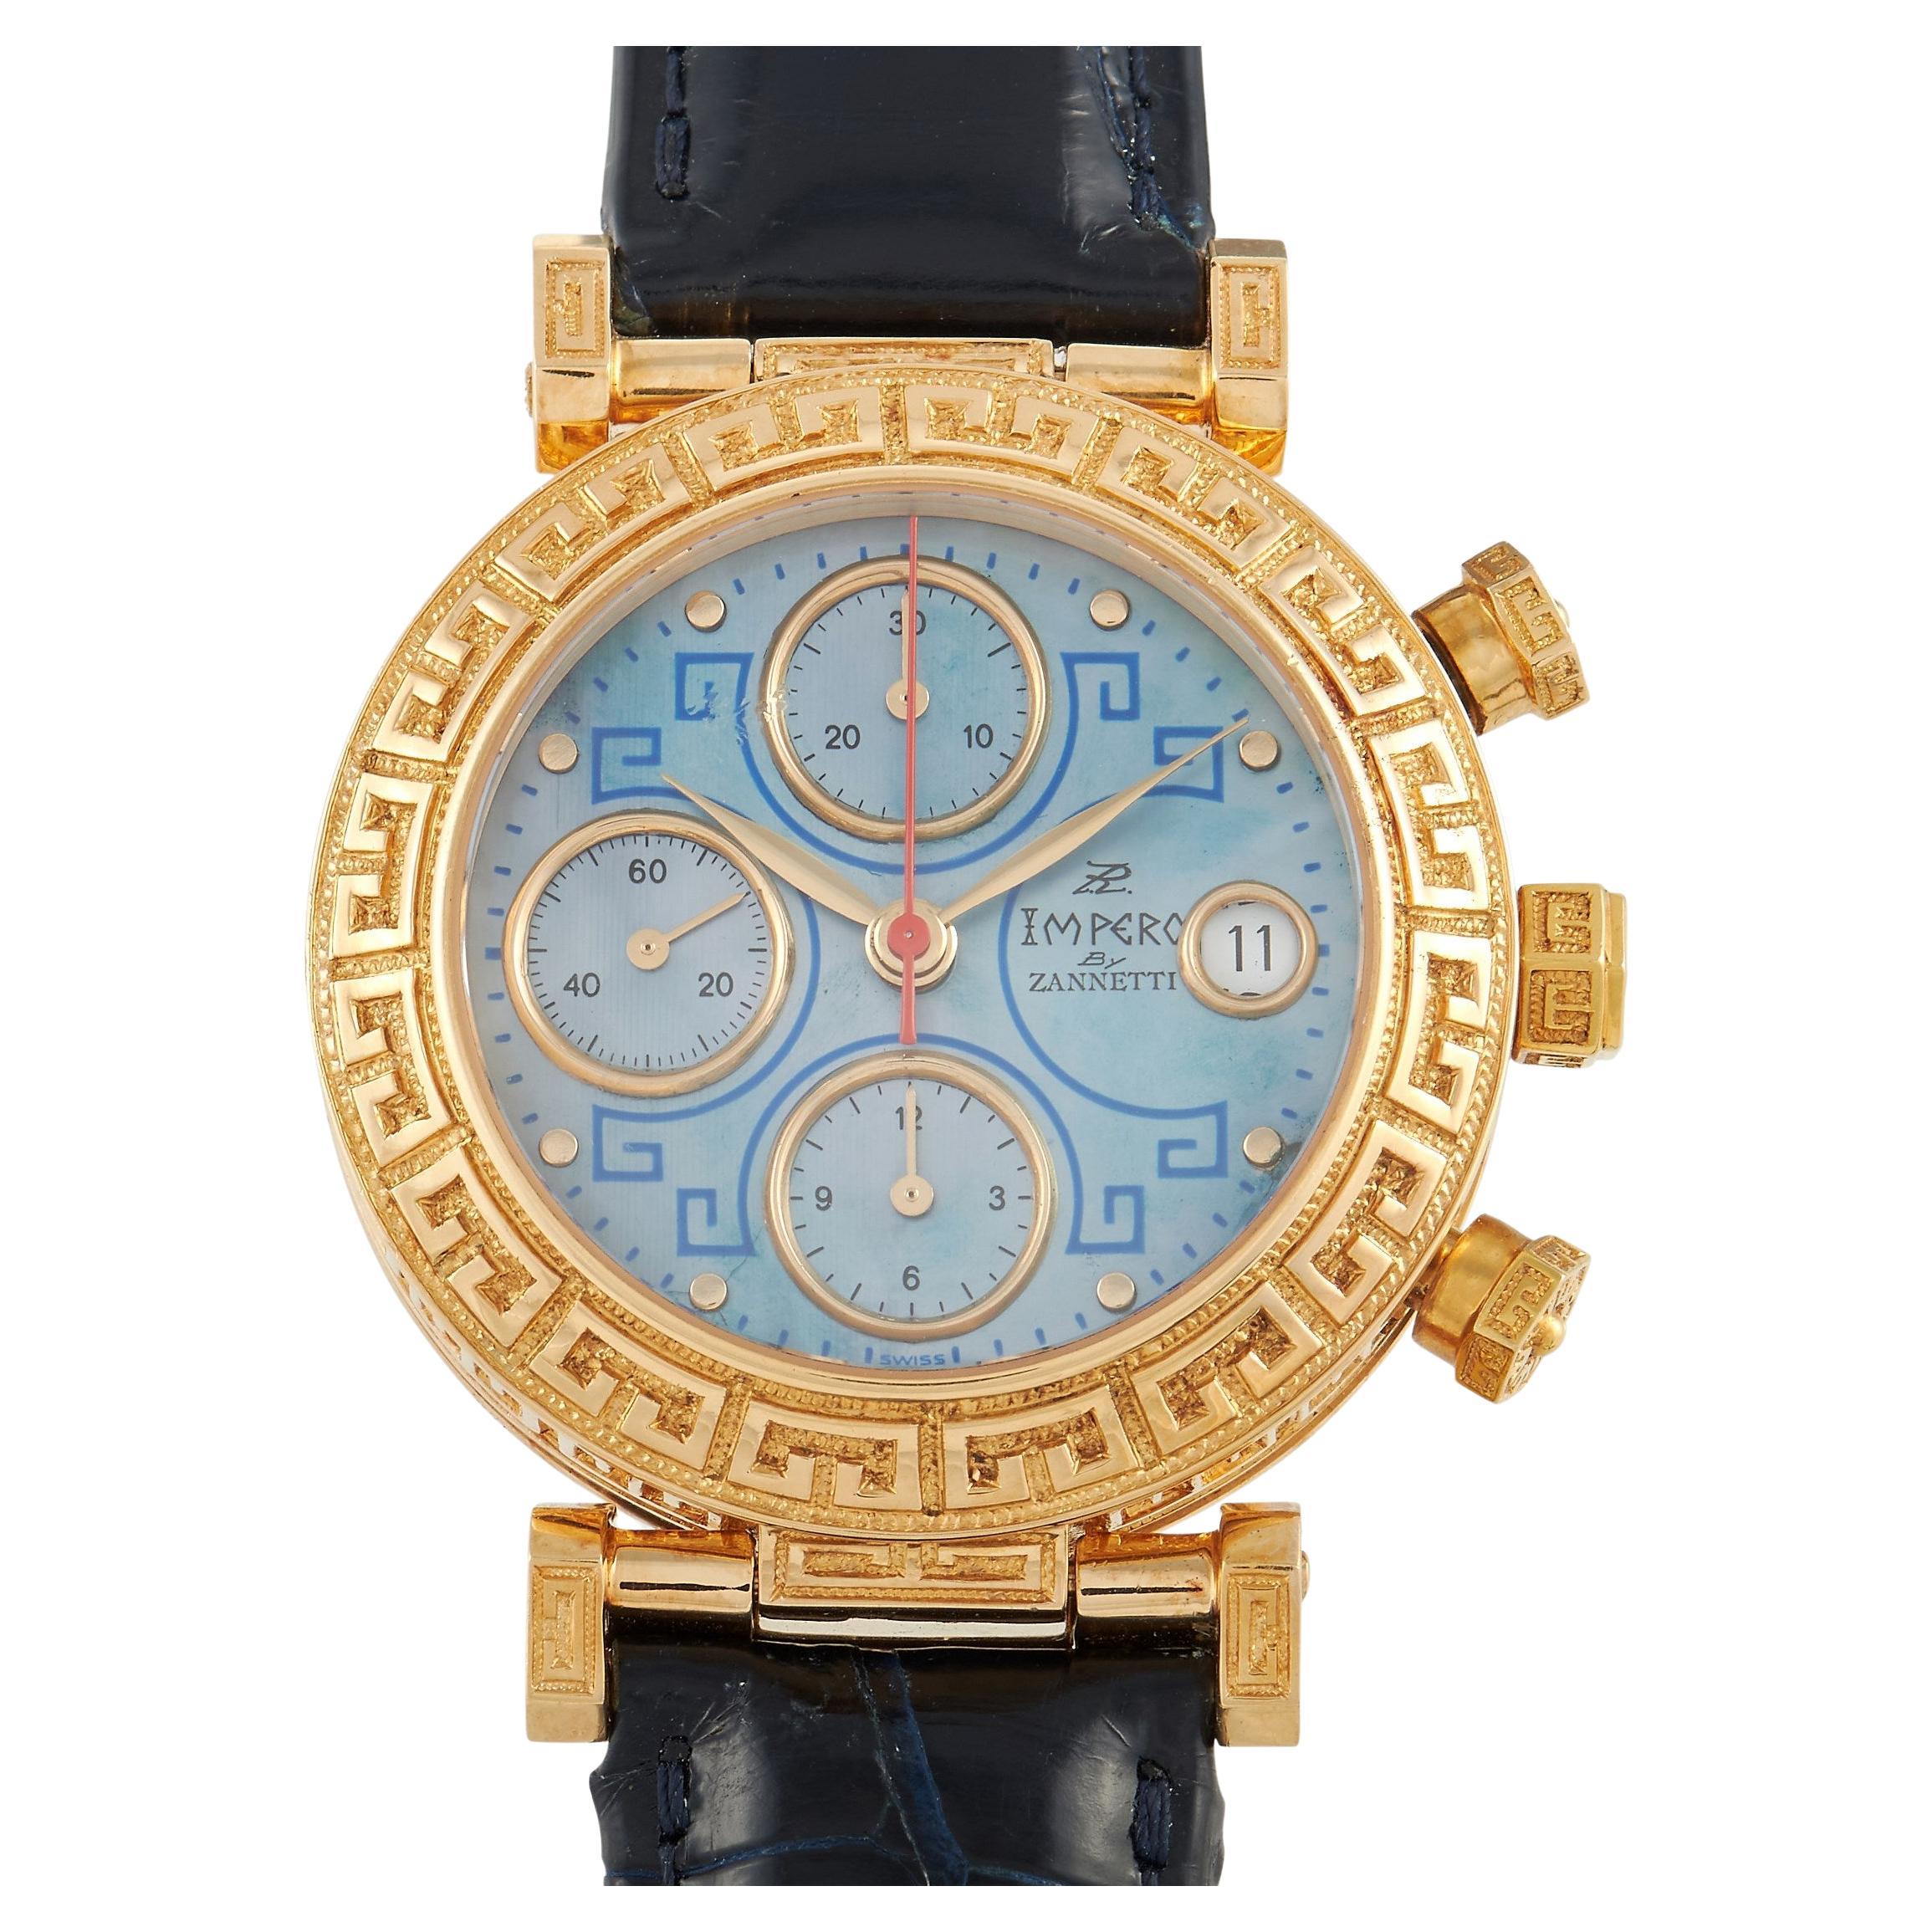 ZANNETTI Jewelry - 2 For Sale at 1stdibs | zannetti watches, zanetti watch,  zannetti watch